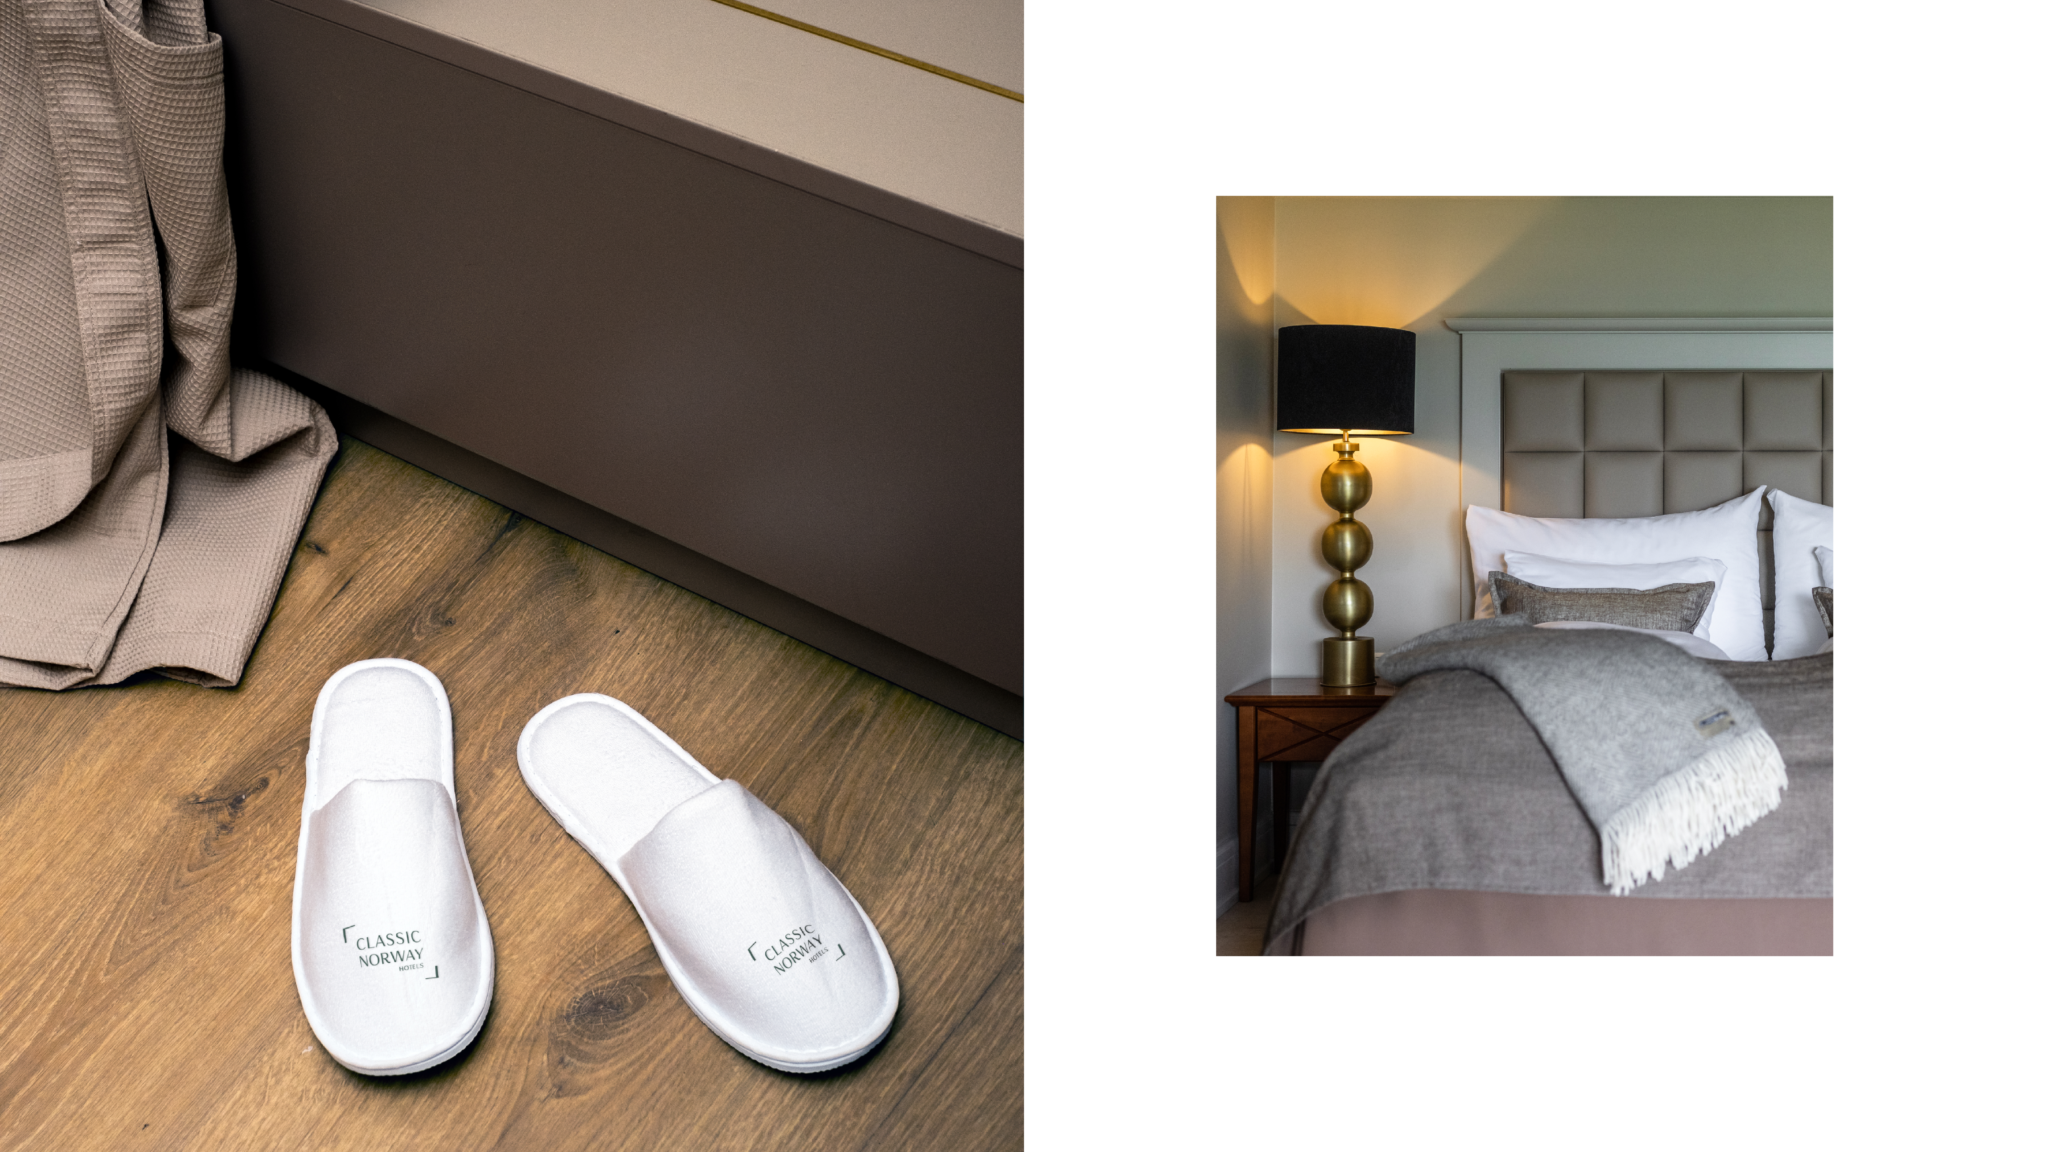 Collage av foto fra hotellrom, hvor den ene delen viser en benk med morgenkåpen slengt oppå og tøfter med logo står på gulvet. Den andre delen av bildet viser en pent oppredd seng med et teppe med logo.